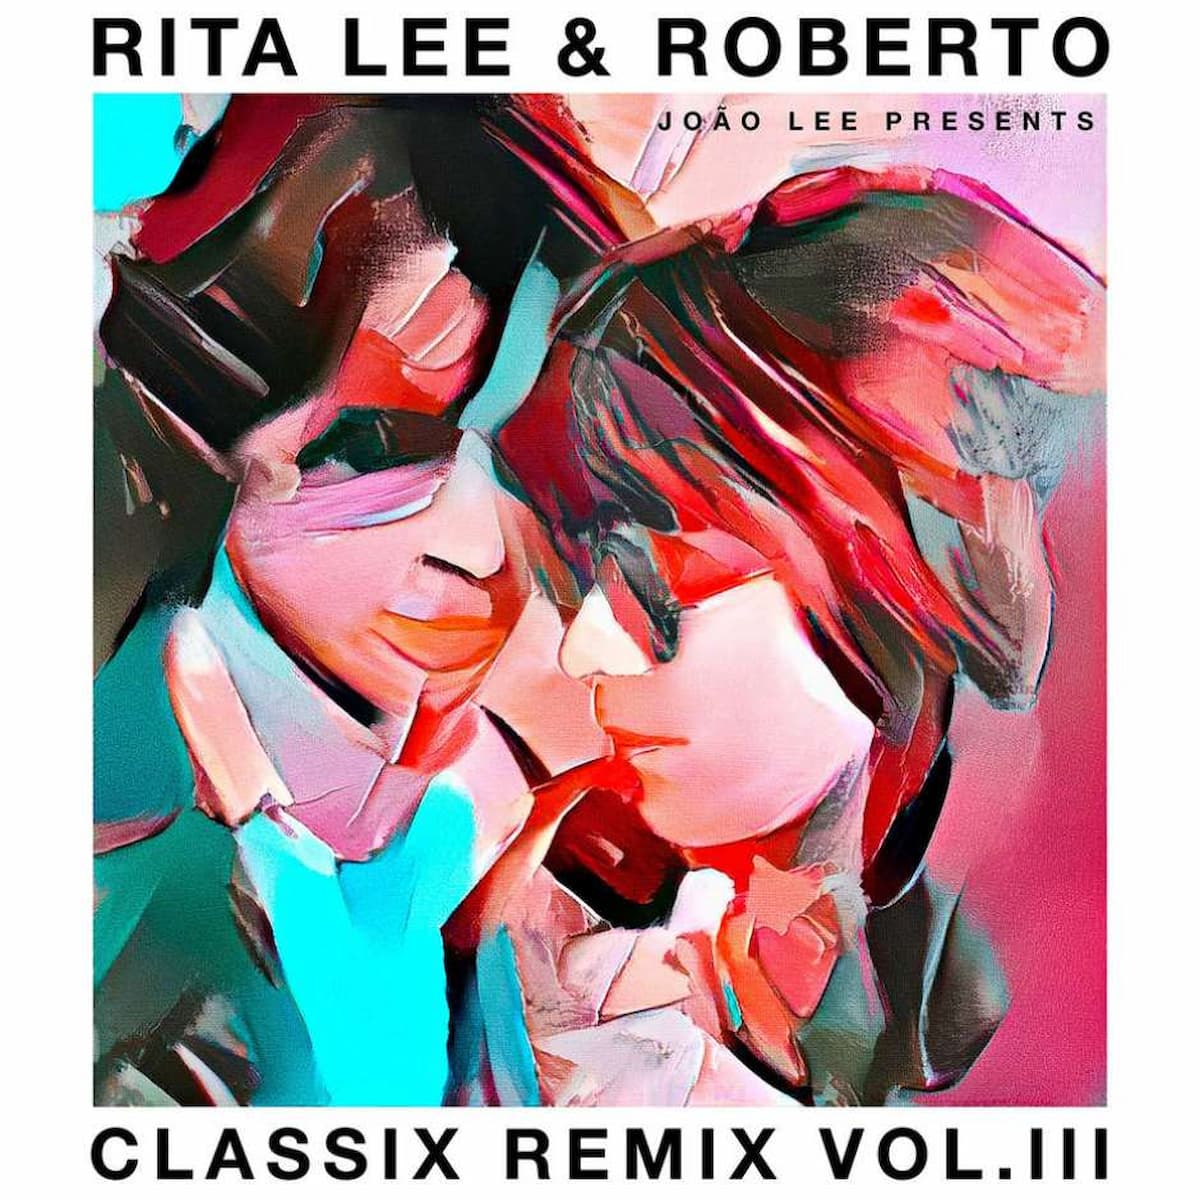 Classix Remix Vol. 3: lançada última parte da coletânea de releituras de Rita Lee e Roberto de Carvalho